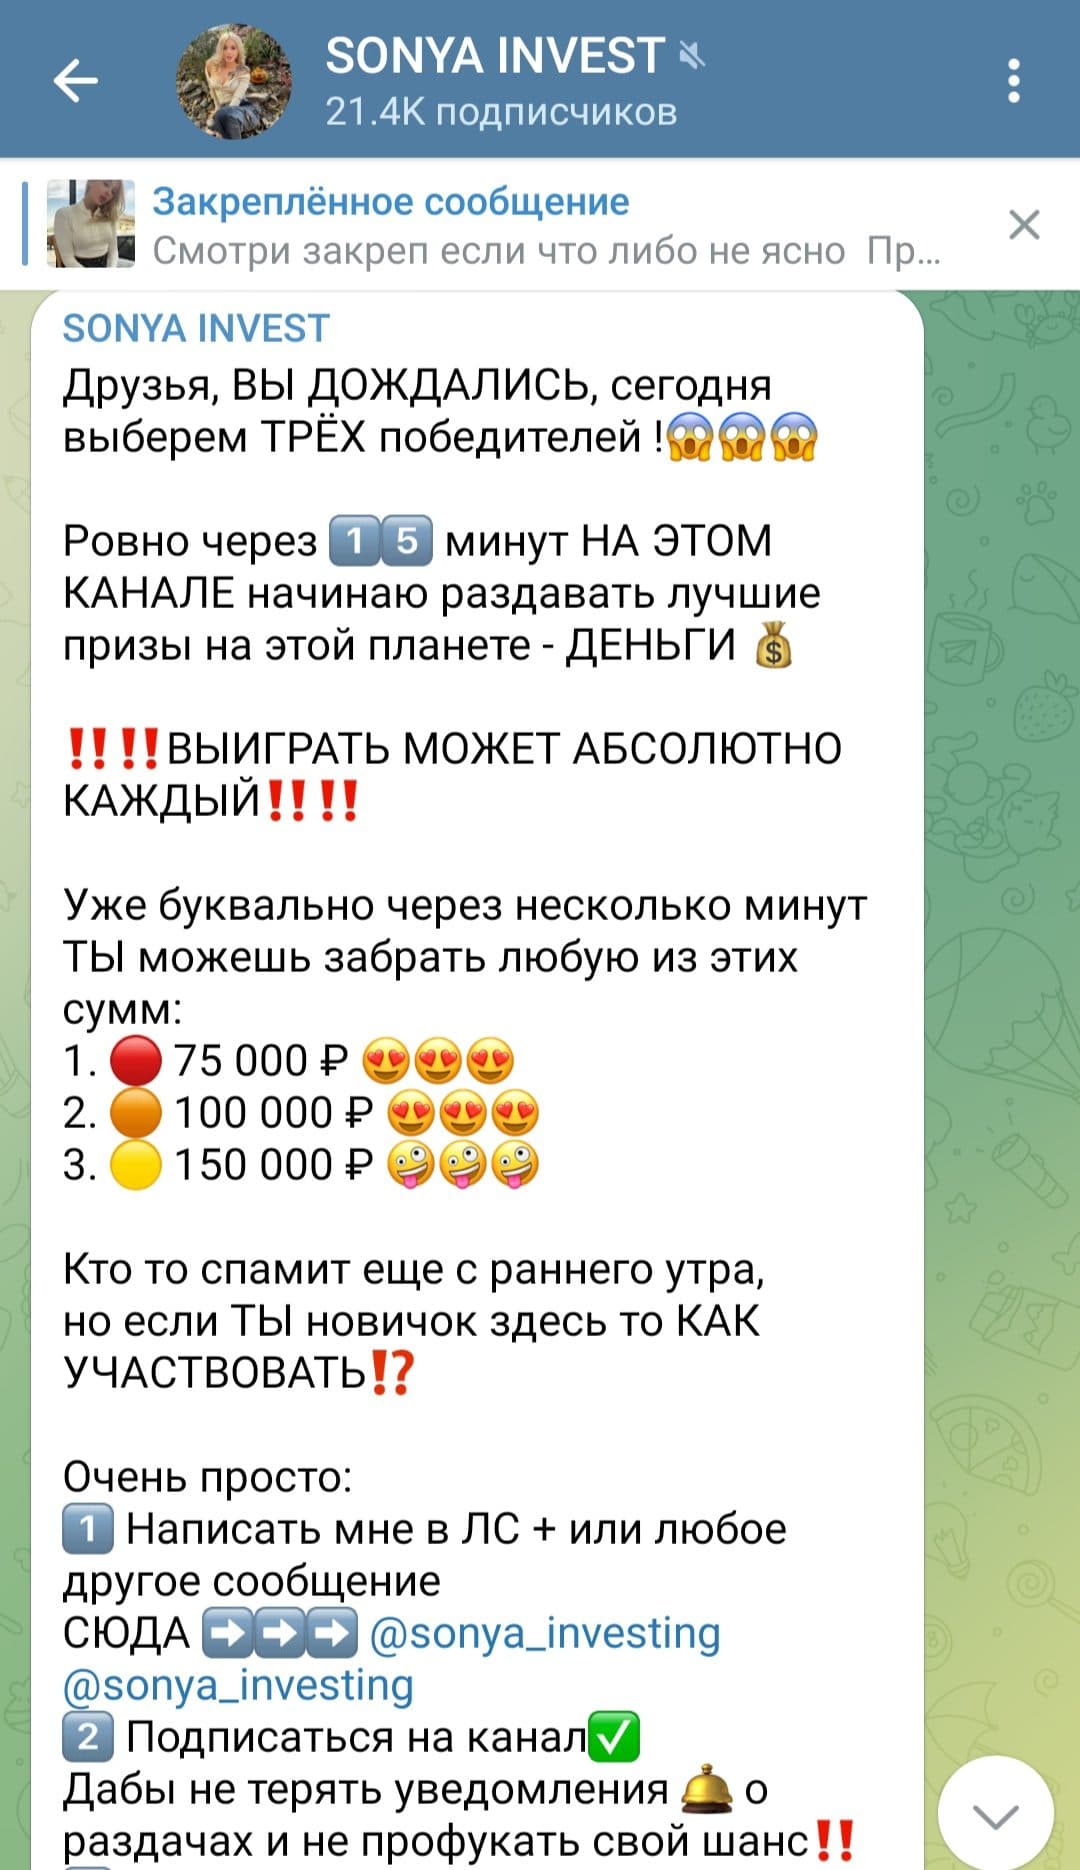 Sonya Invest телеграм